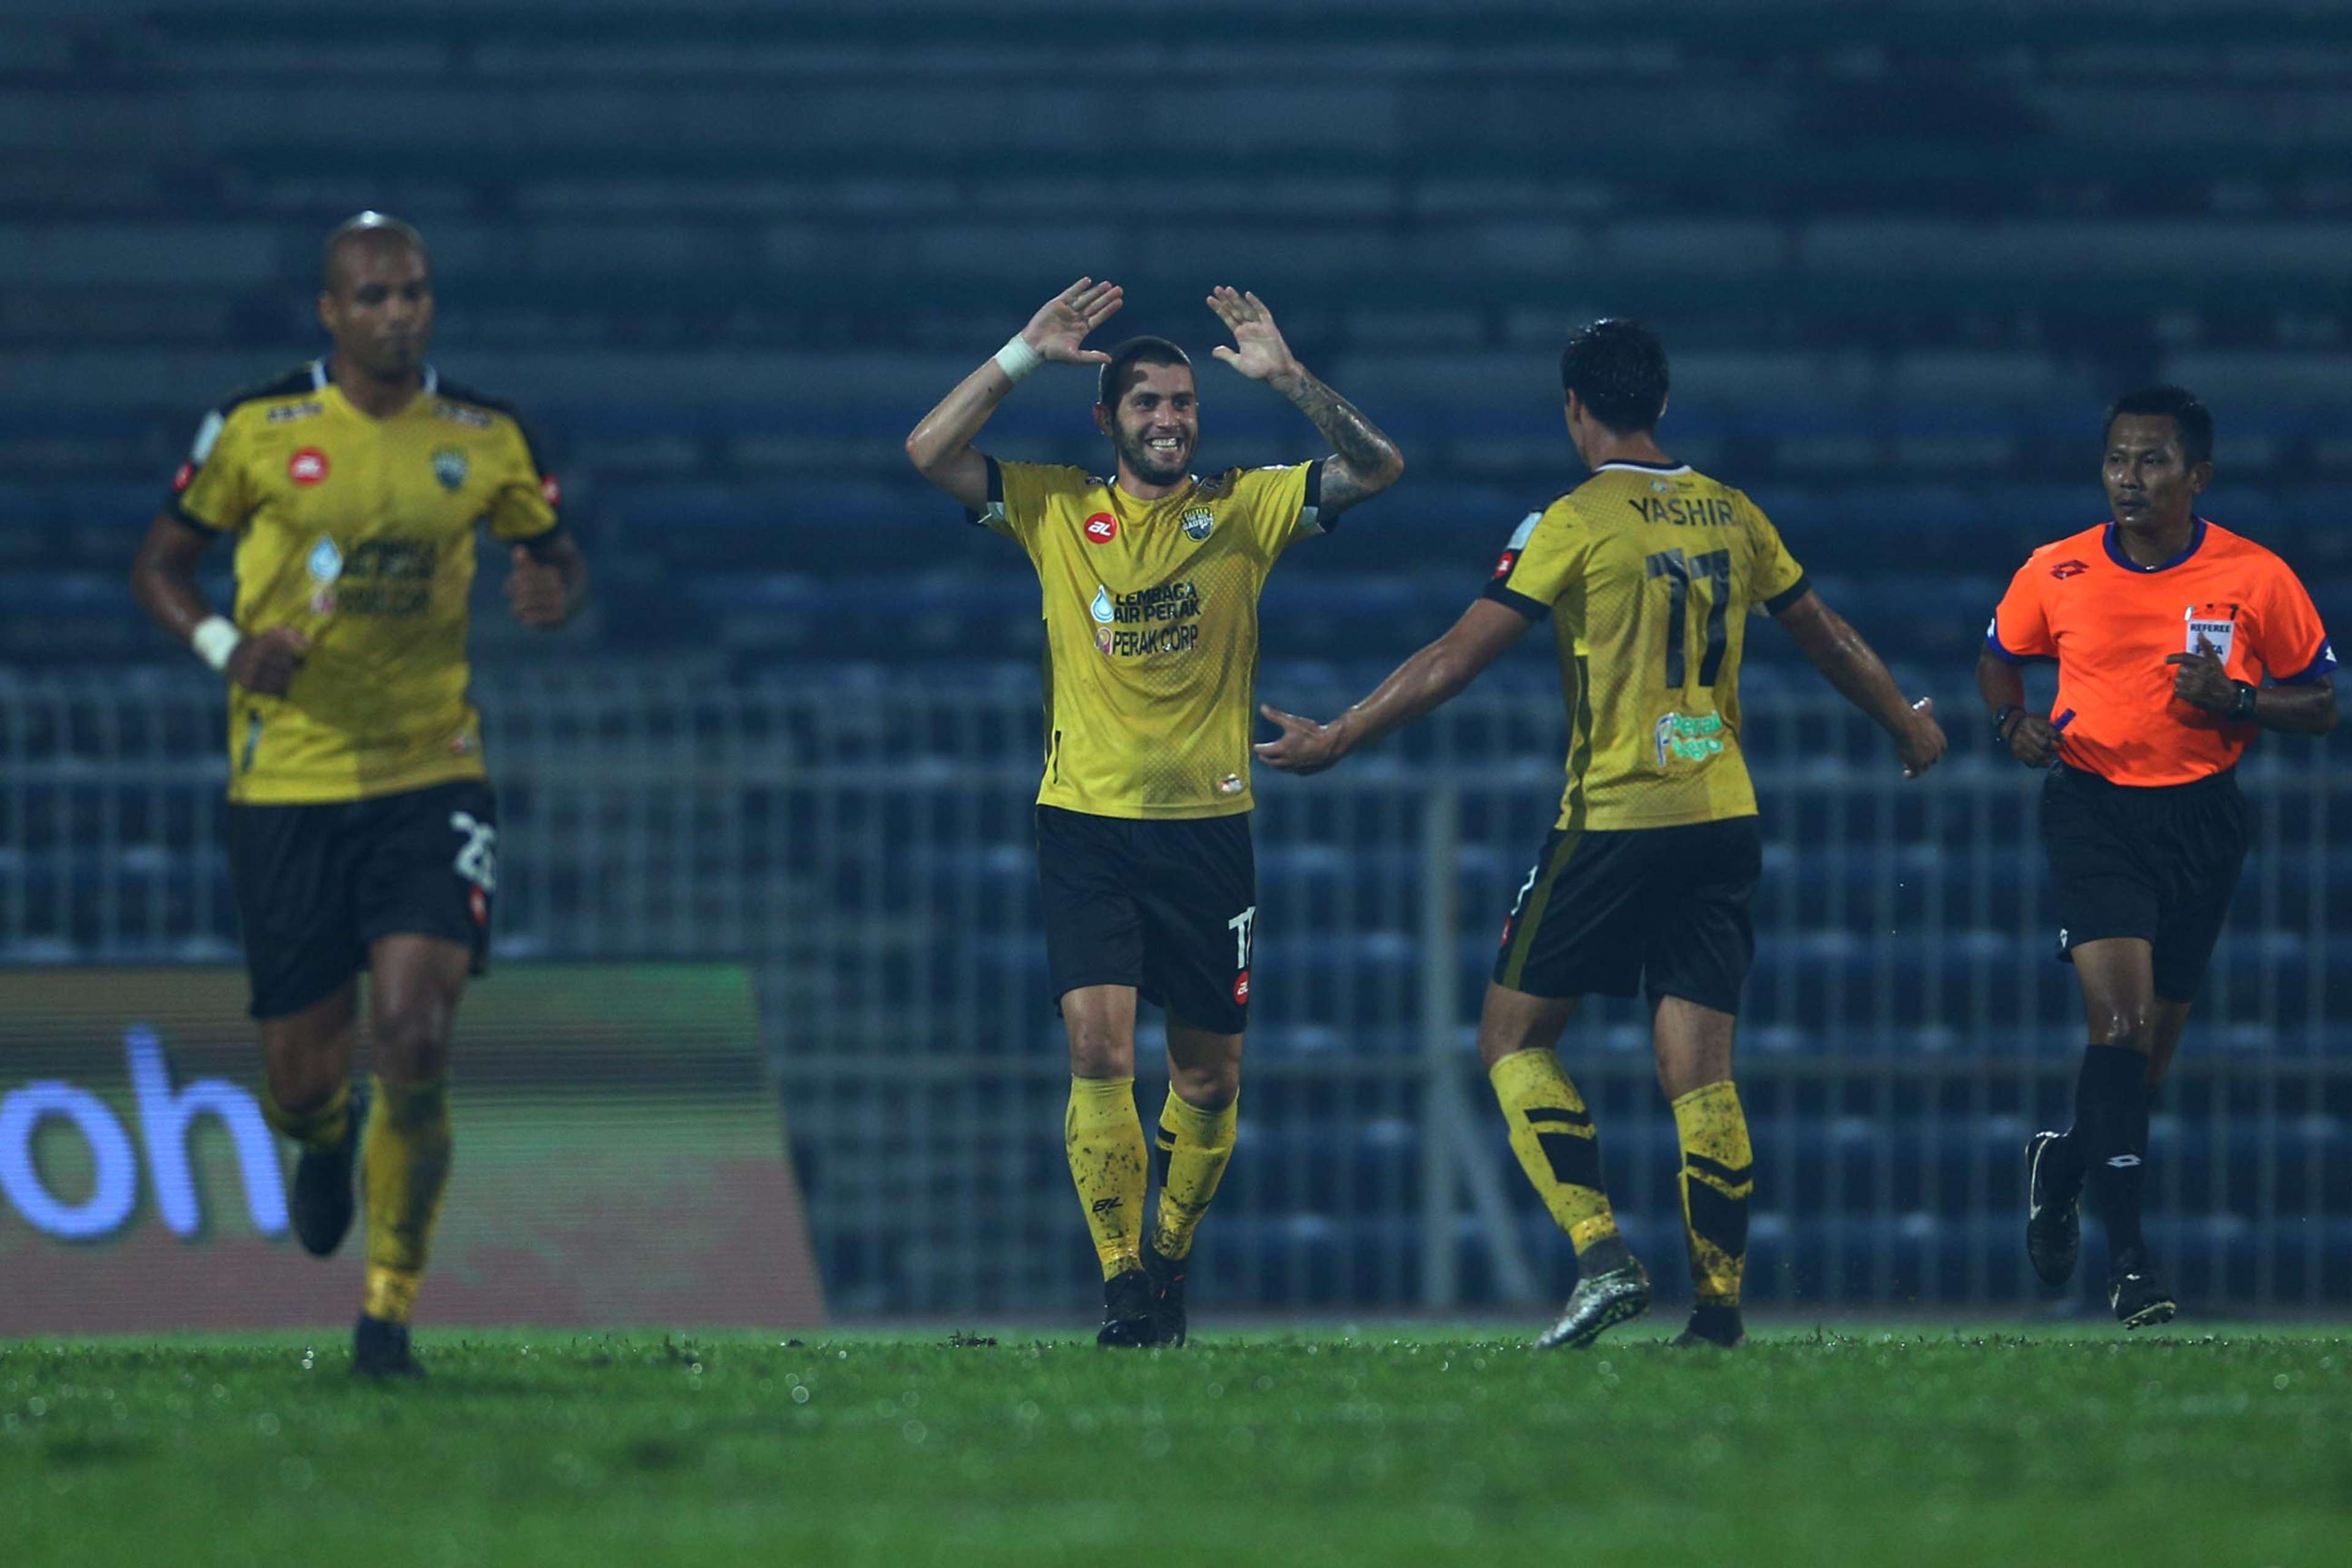 Thiago Aquino, Vladislav Mirchev, Yashir Pinto, Perak, Kelantan, Super League, 01032017